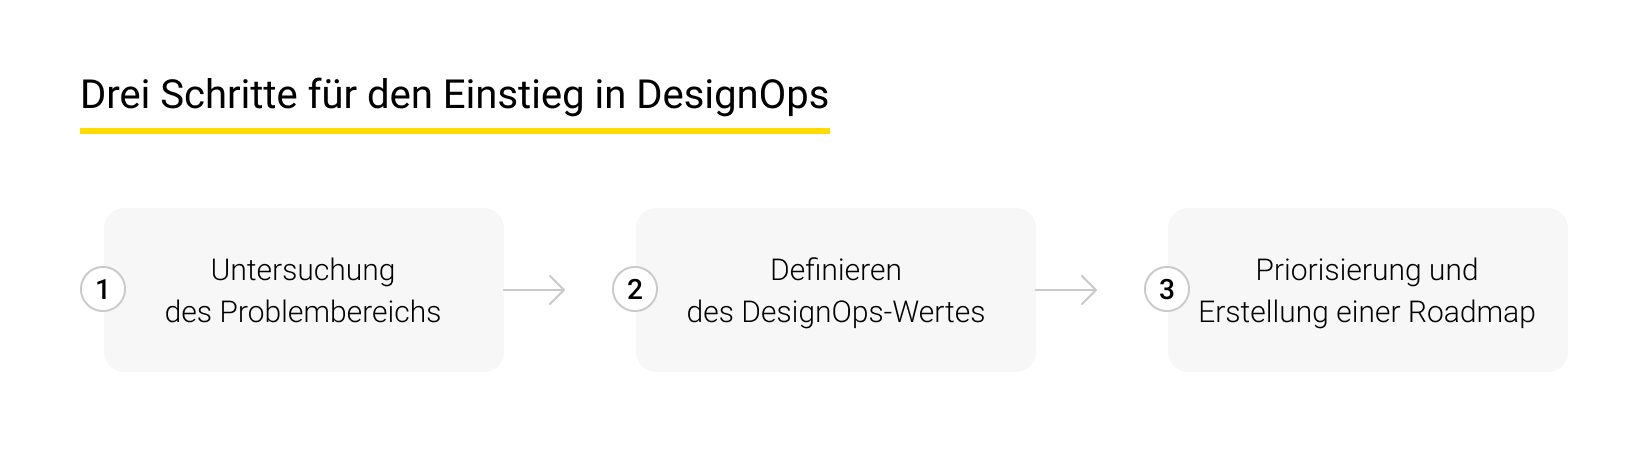 Schritte für den Einstieg in DesignOps